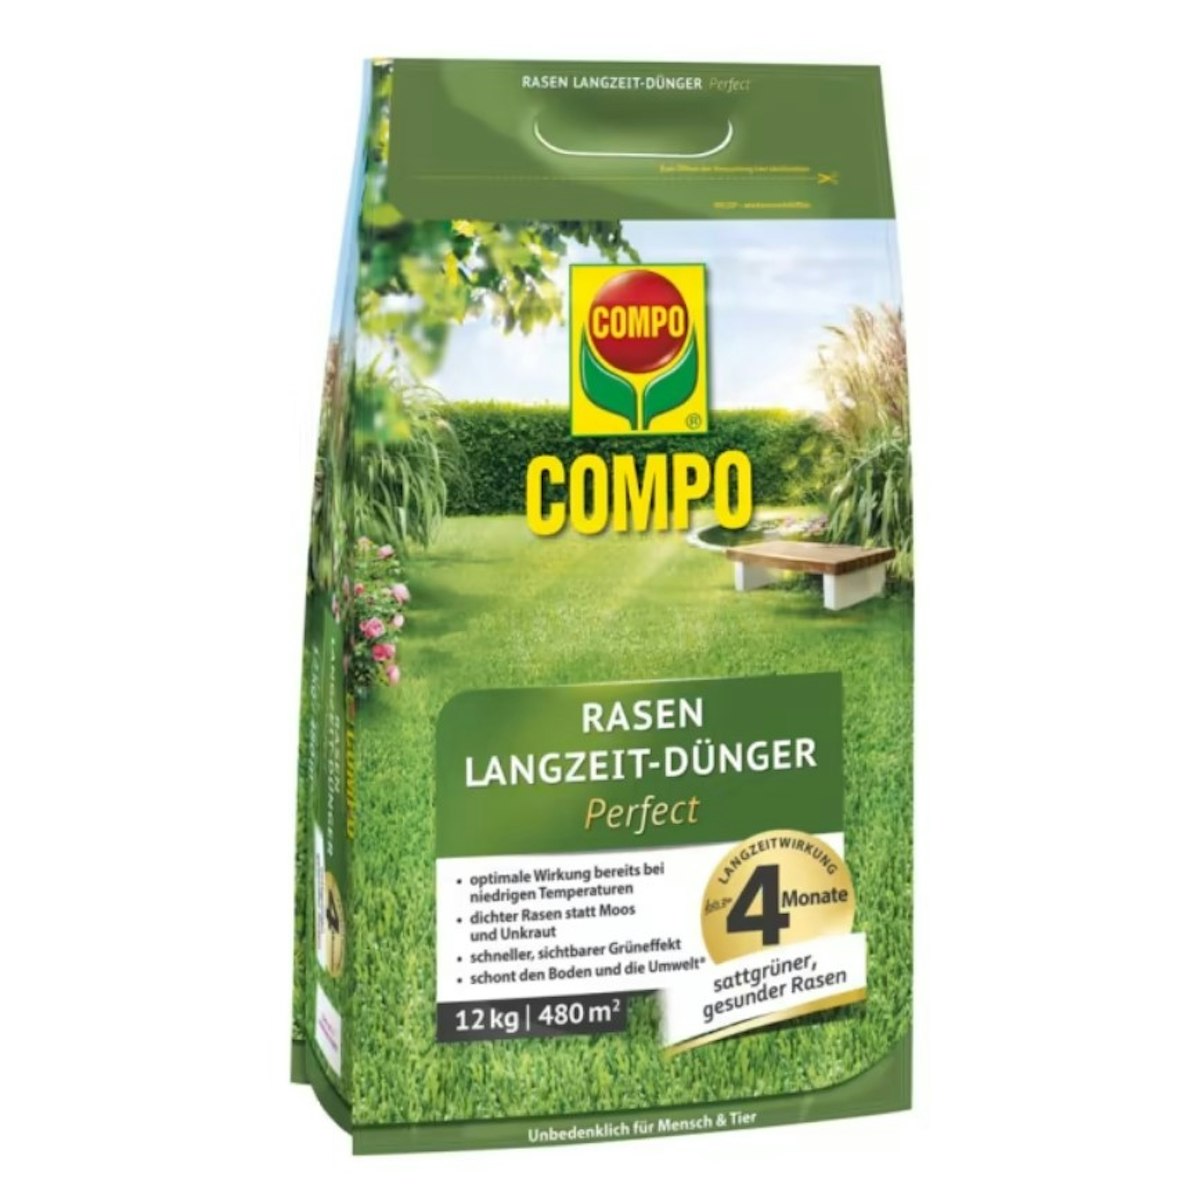 COMPO Rasen Langzeit-Dünger Perfect 12 kg für 480 m² von COMPO